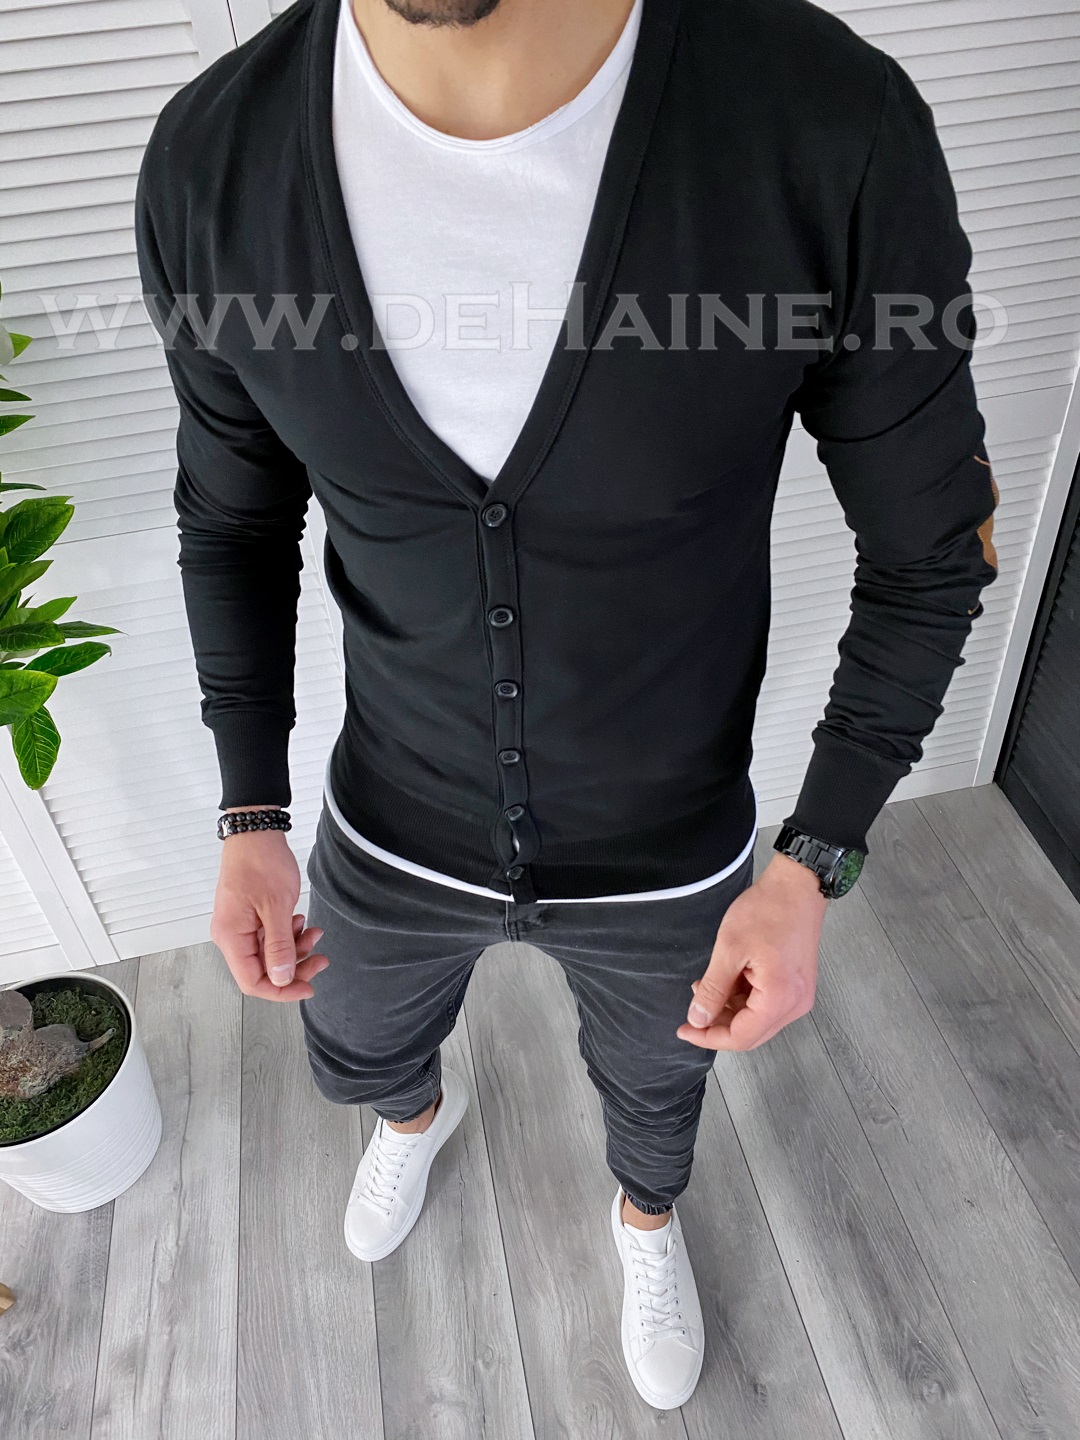 Bluza barbati neagra slim fit A6270 3-3.1